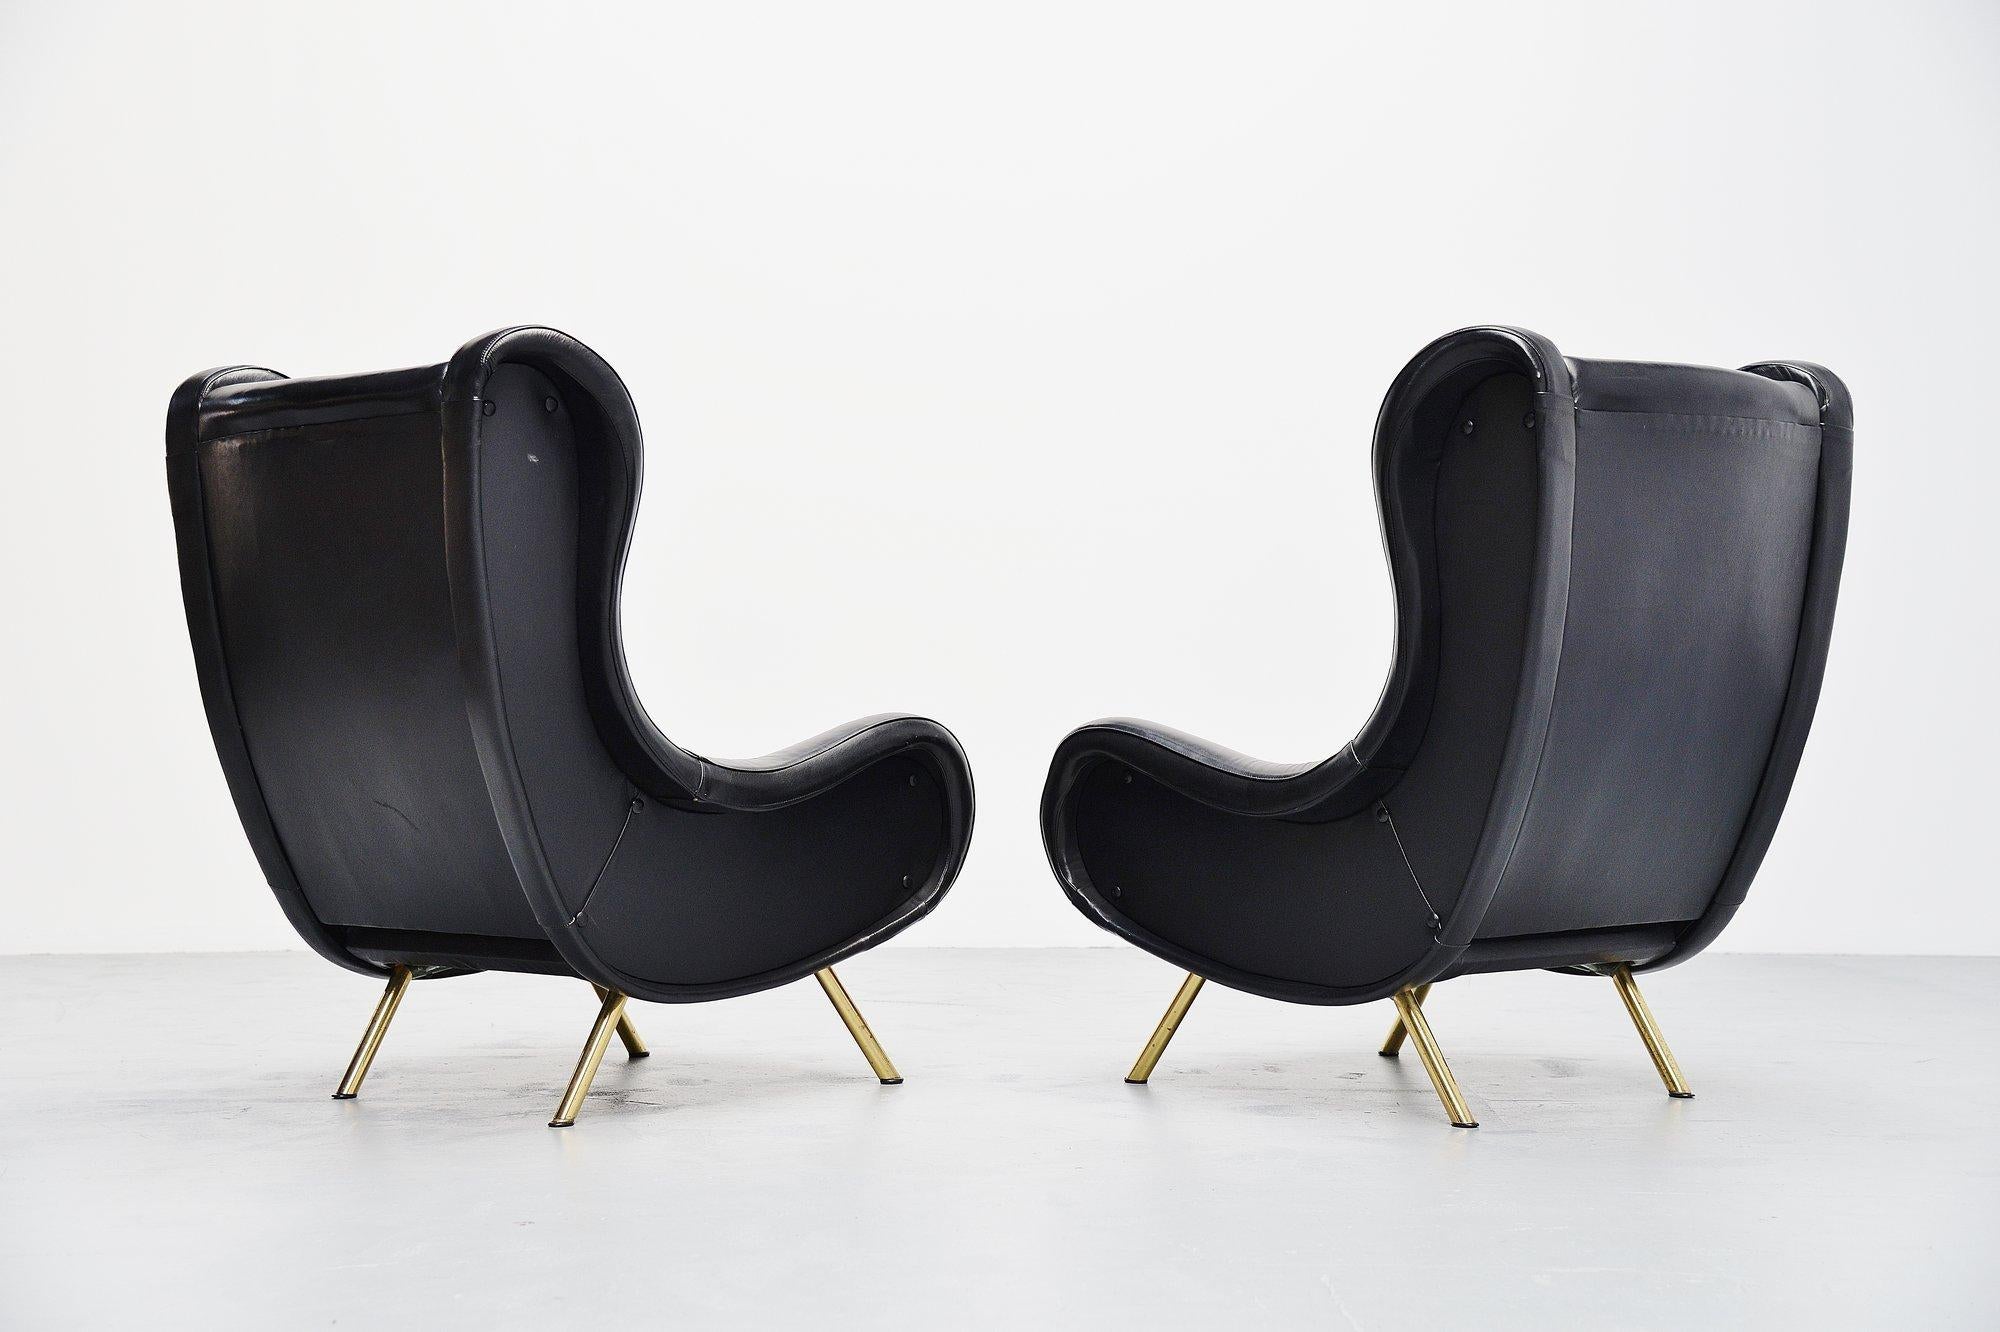 Fantastisches ikonisches Sesselpaar, entworfen von dem weltbekannten Designer Marco Zanuso und hergestellt von Arflex, Italien 1951. Diese beiden Sessel haben ihre Original-Lederbezüge, was bei diesen Stühlen recht selten ist. Der Zustand des Leders